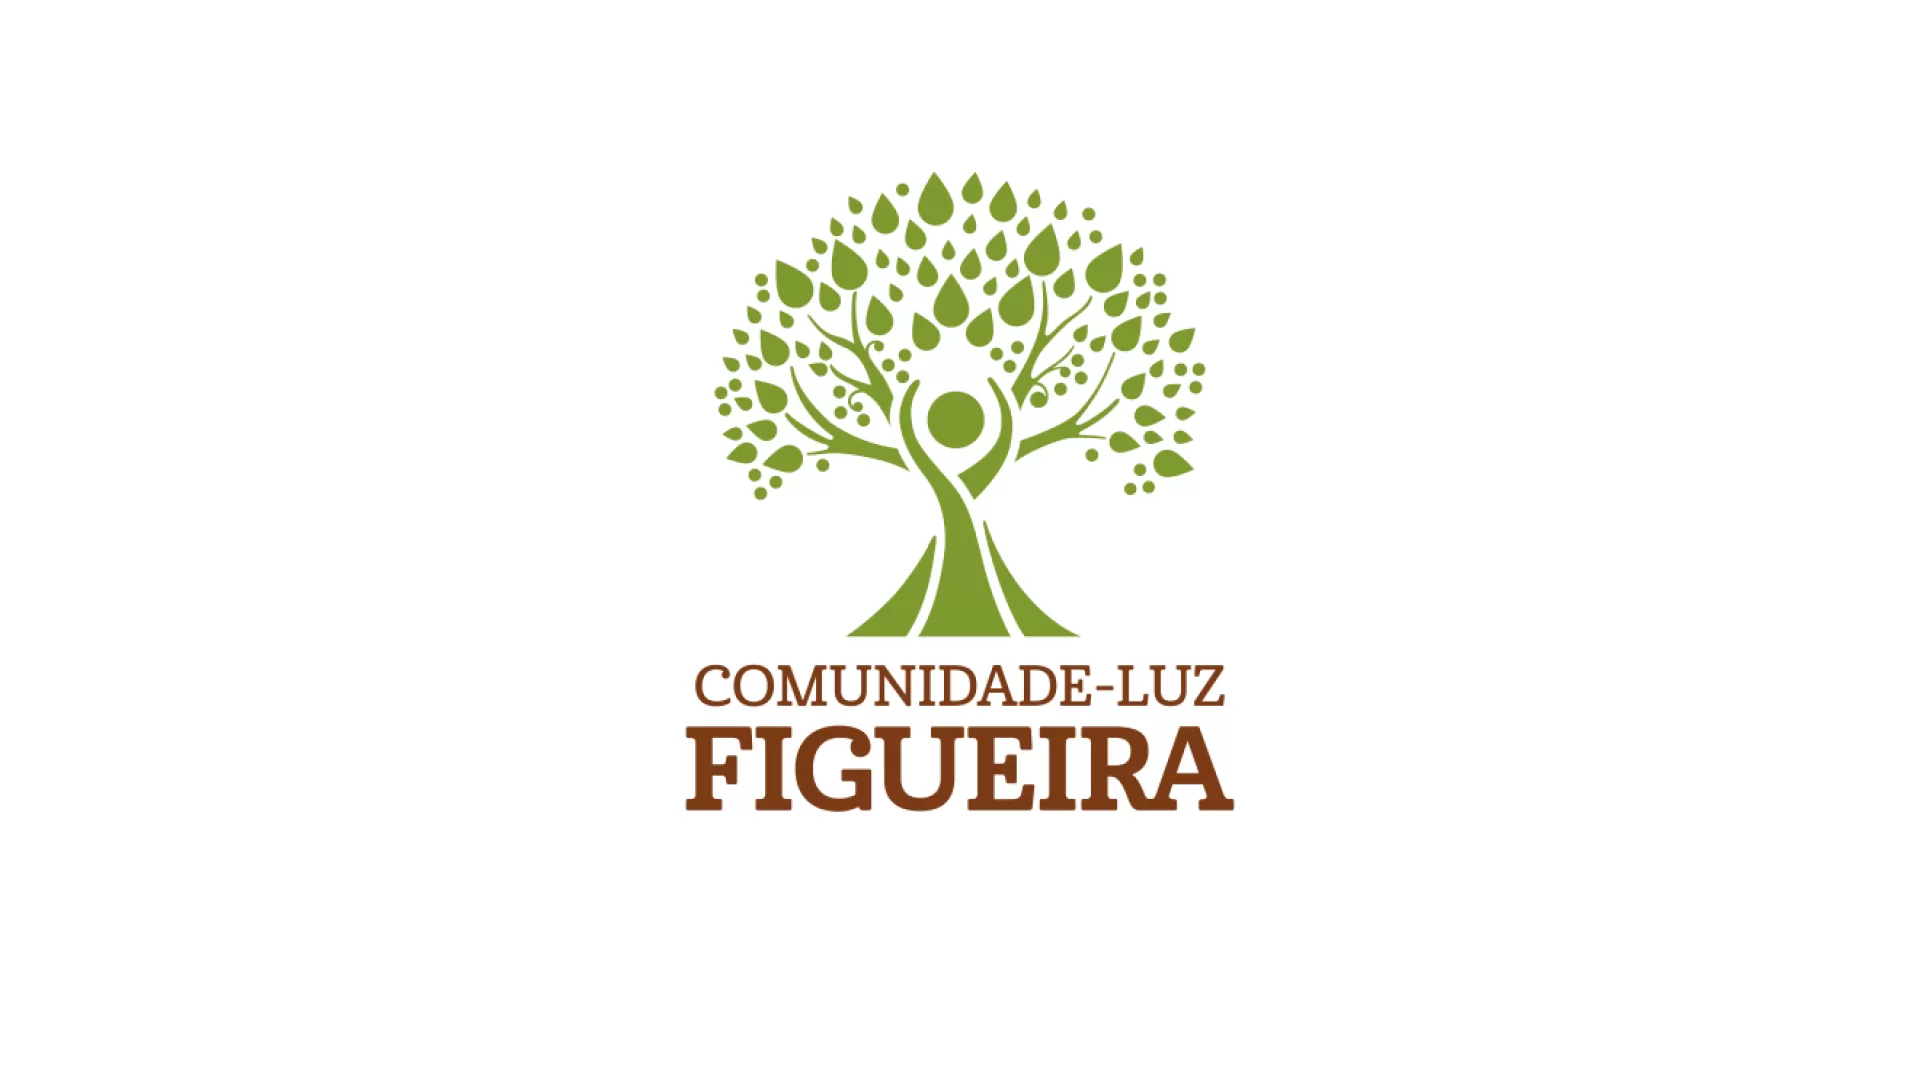 Nuevo logo de la Comunidad-Luz Figueira